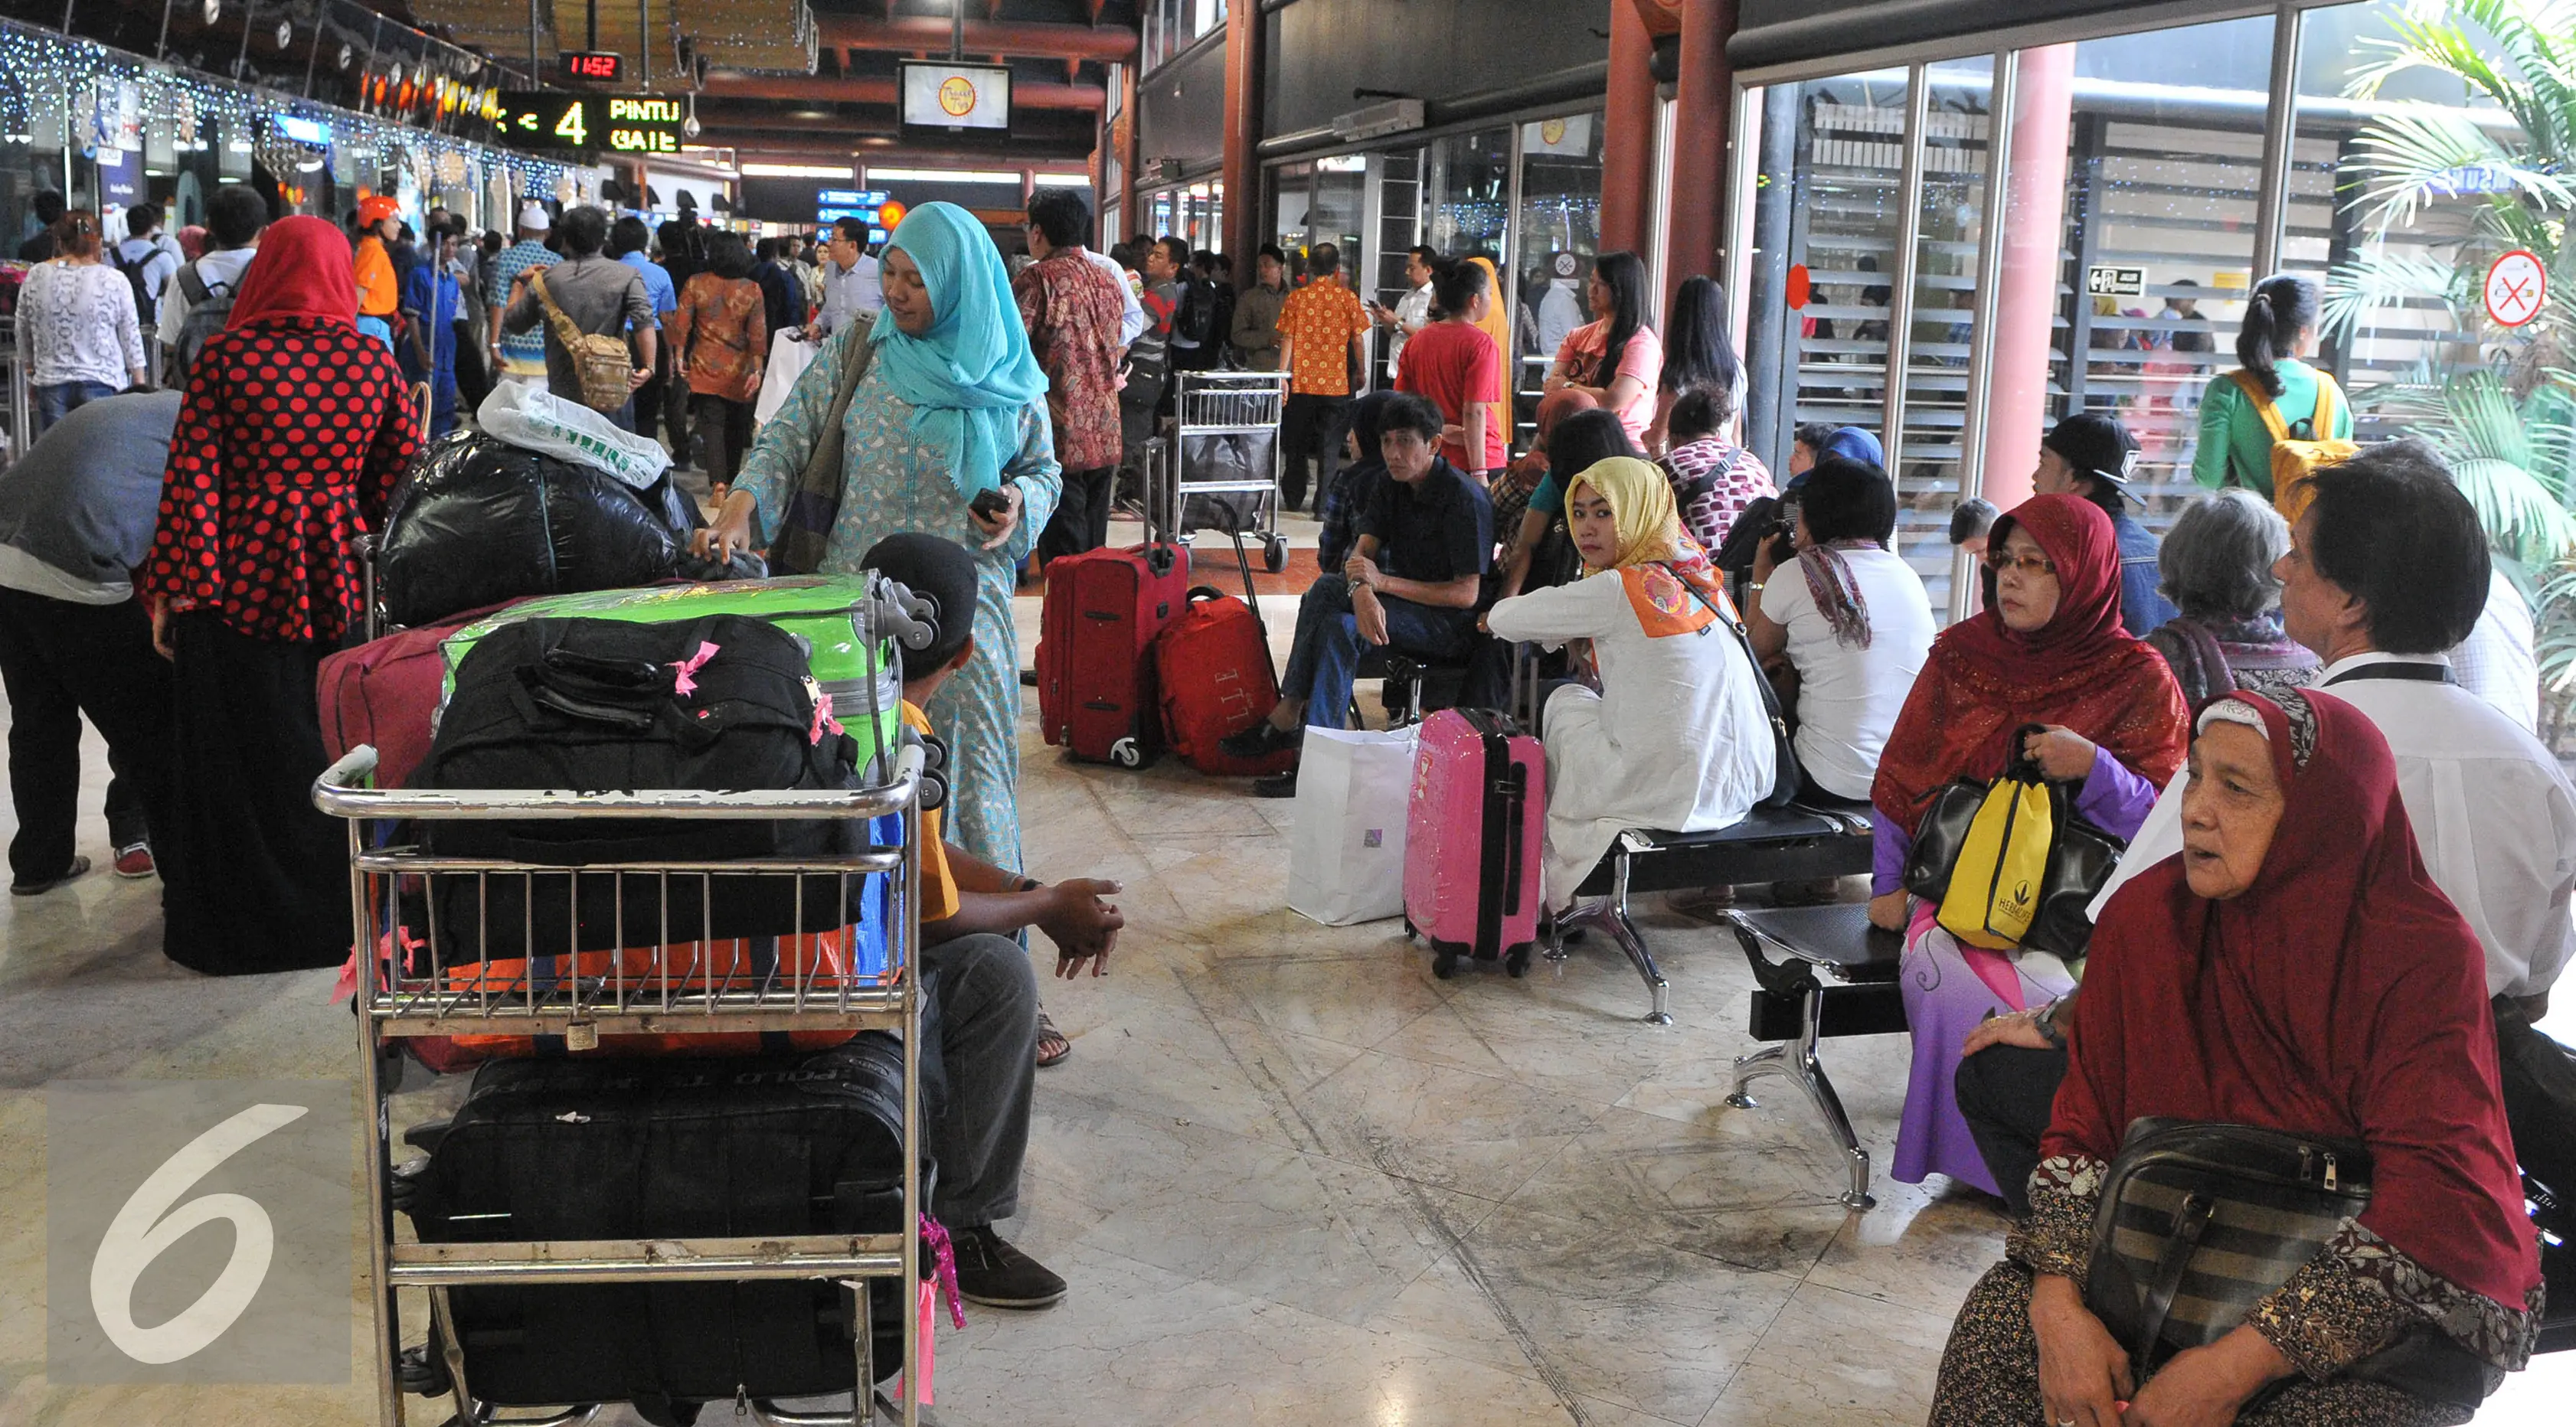 Sejumlah calon penumpang menunggu keberangkatan di terminal 2E Bandara Soekarno Hatta, Tangerang, Senin (6/7/2015). Pasca insiden kebakaran pada Minggu (5/6) lalu, situasi terminal 2E Bandara Soekarno Hatta mulai normal. (Liputan6.com/Herman Zakharia)